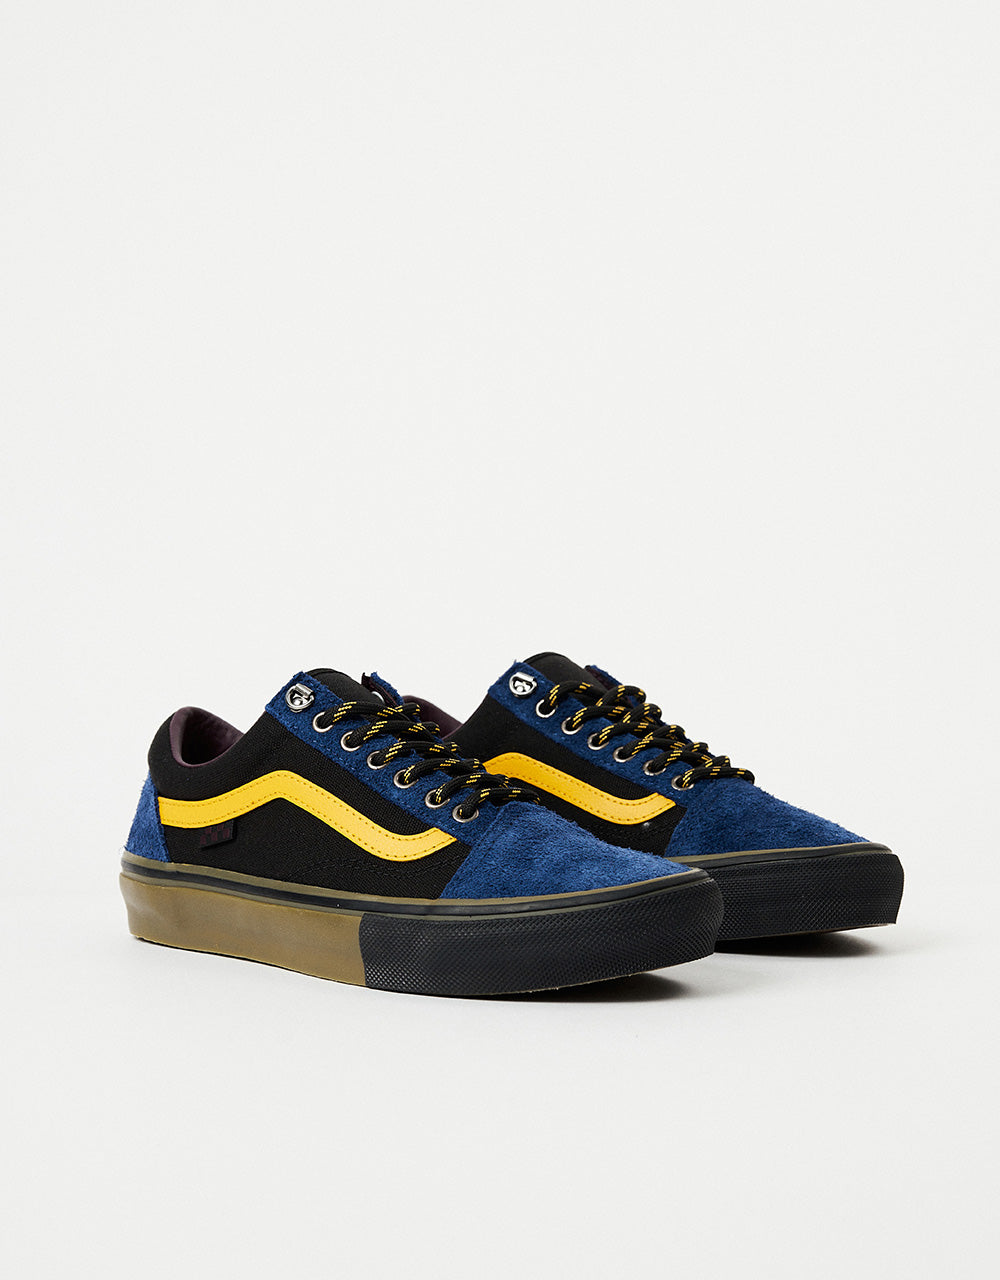 Vans Skate Old Skool Shoes - (Outdoor) Navy/Dark Gum